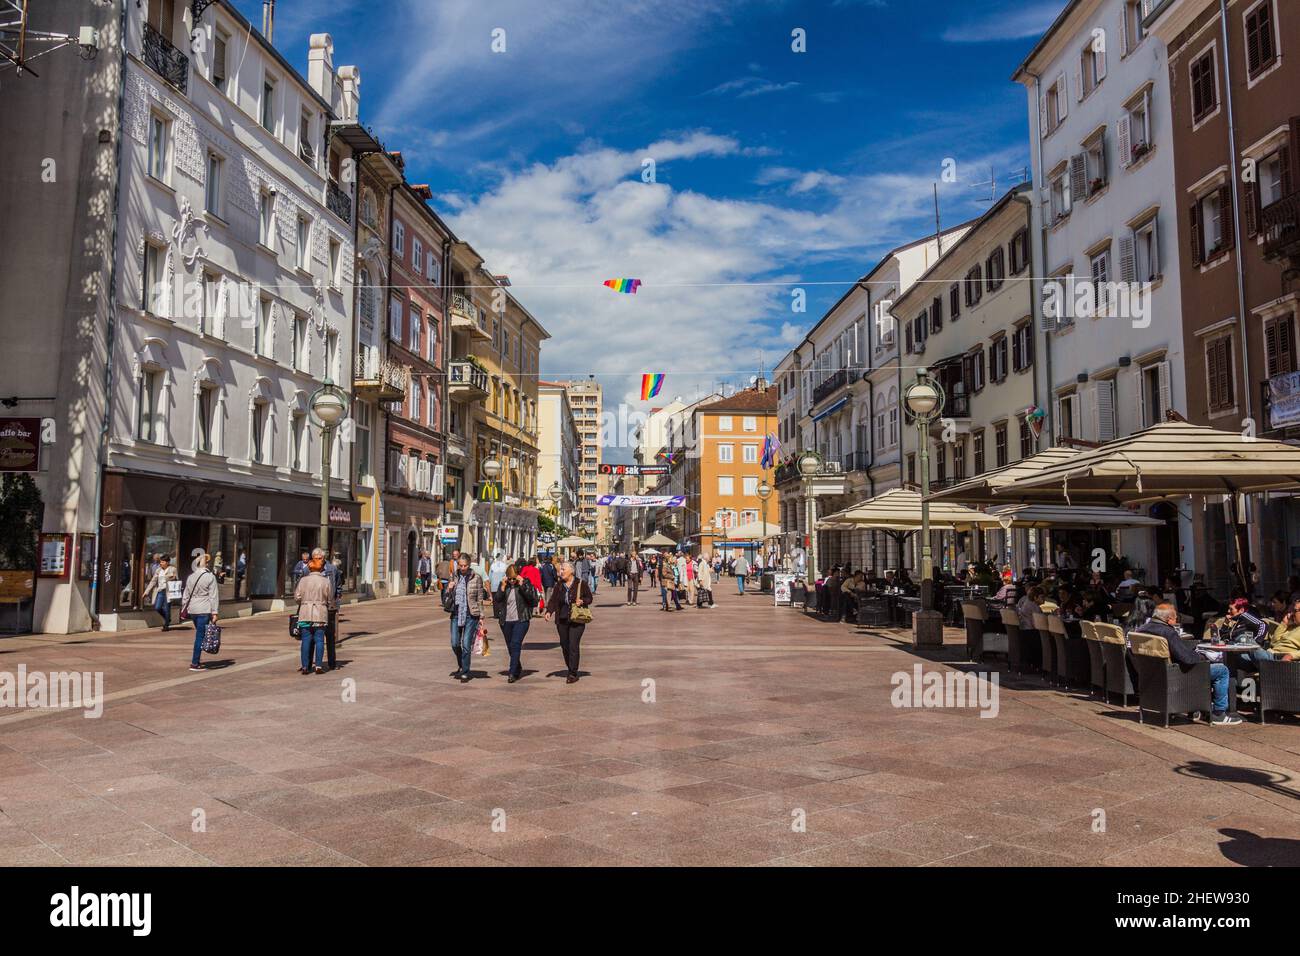 RIJEKA, CROATIA - MAY 23, 2019: Korzo pedestrian street in Rijeka, Croatia Stock Photo